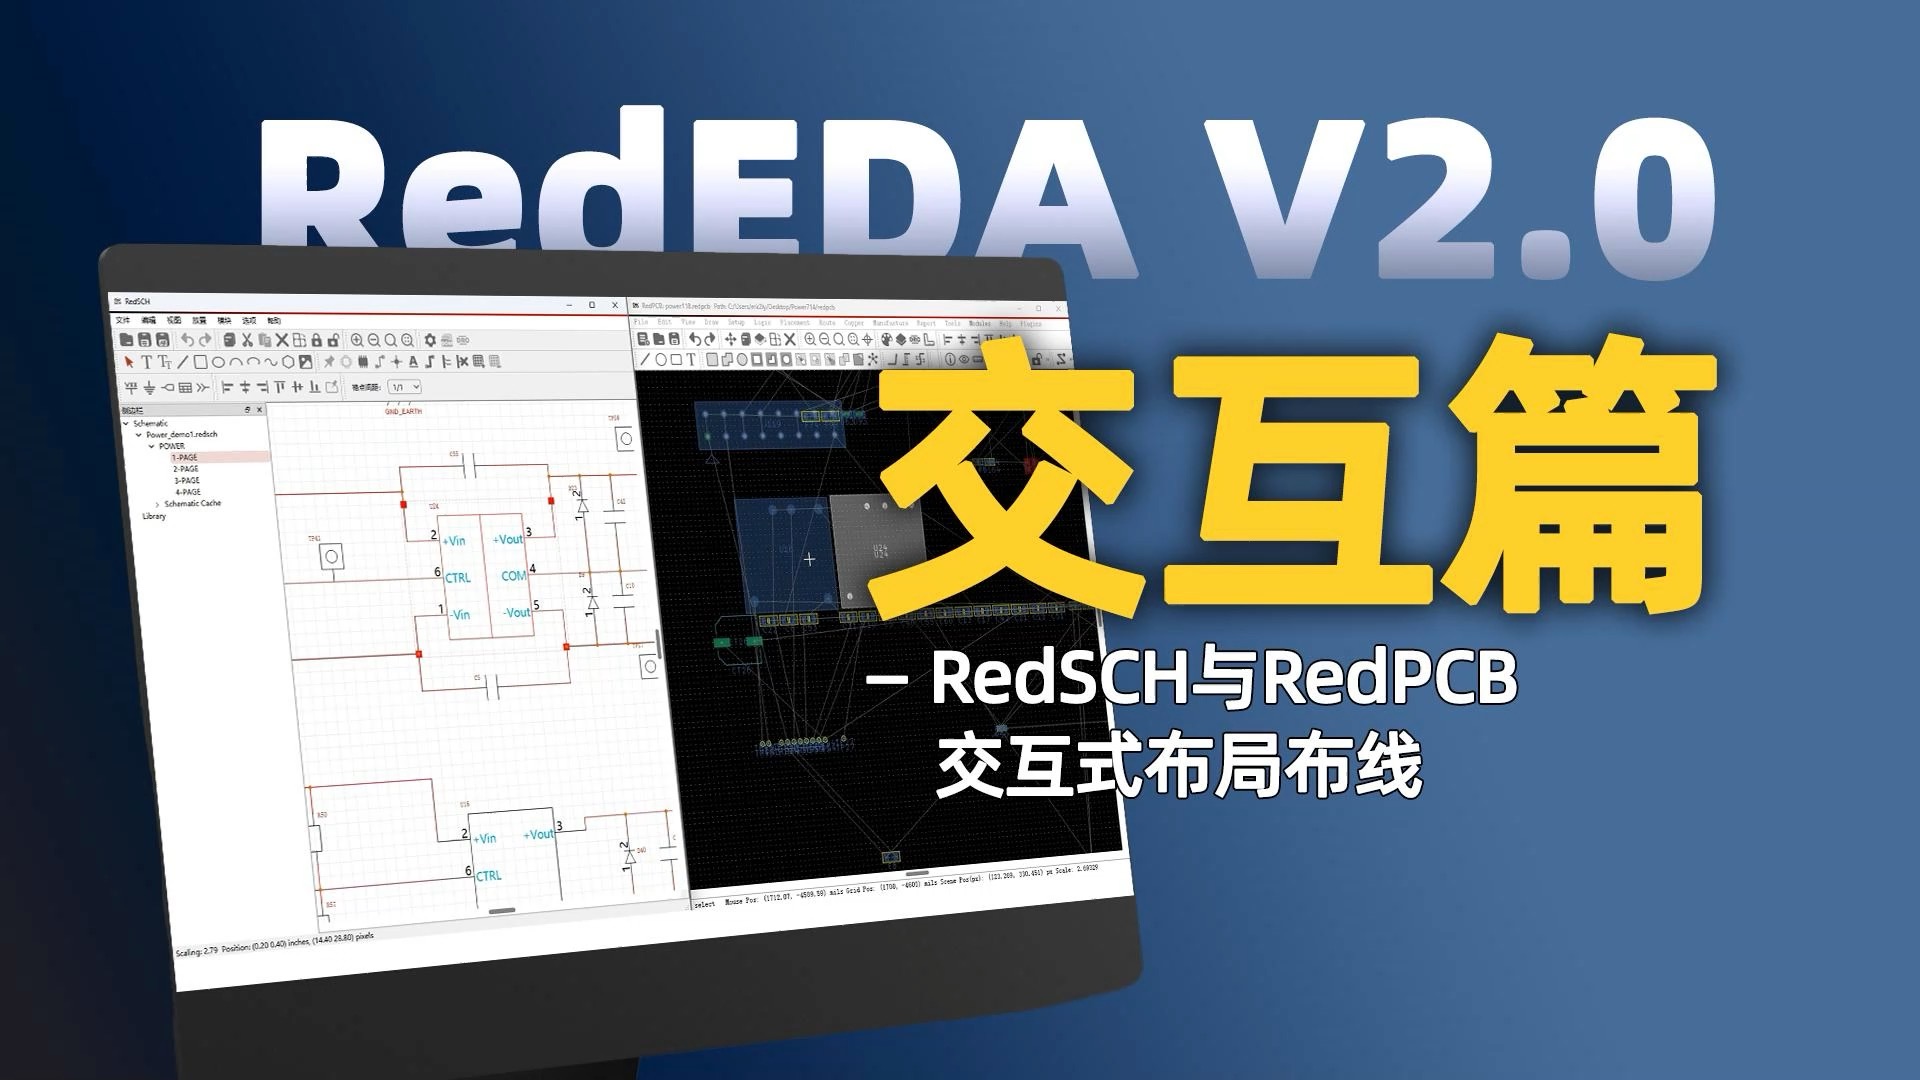 真的嘛？RedEDA实现原理图和PCB交互式布局了！#原理图 #pcb设计 #电子工程师 #EDA 